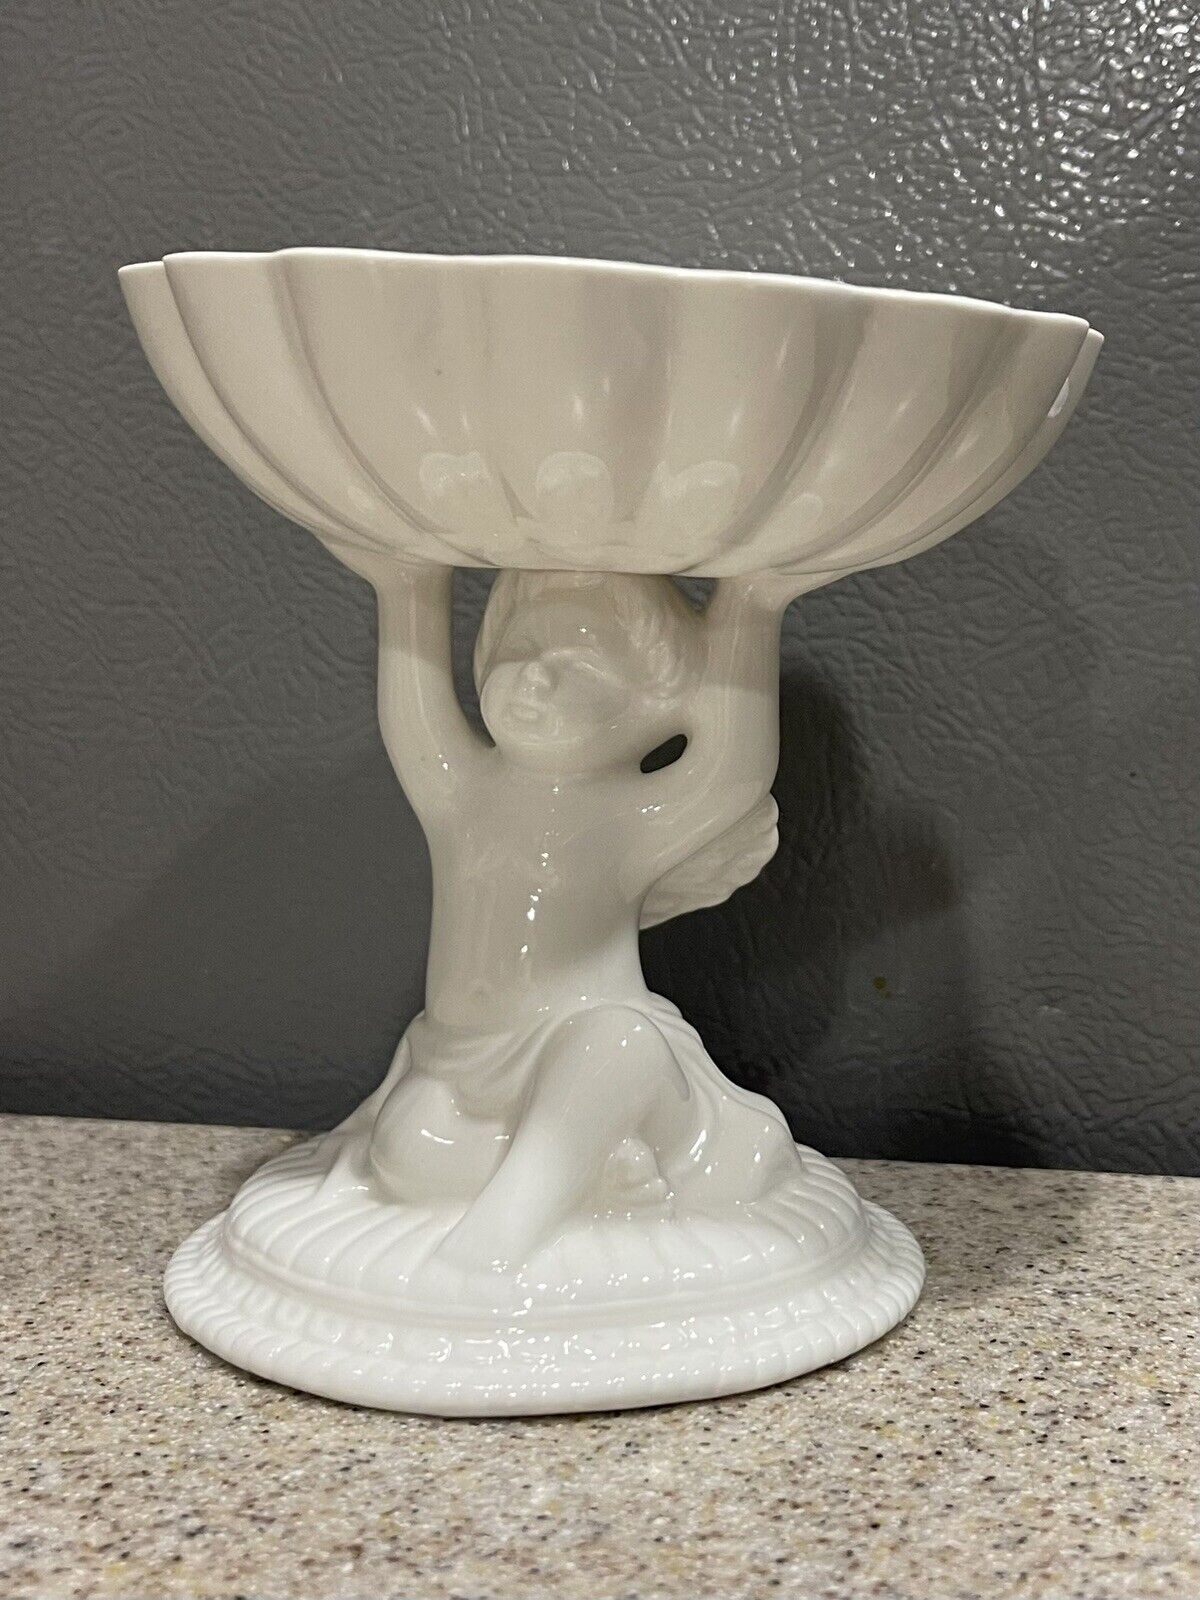 Cherub Pedestal White Trinket Ceramic Dish Soap 70s Victorian Shabby Decor Avon